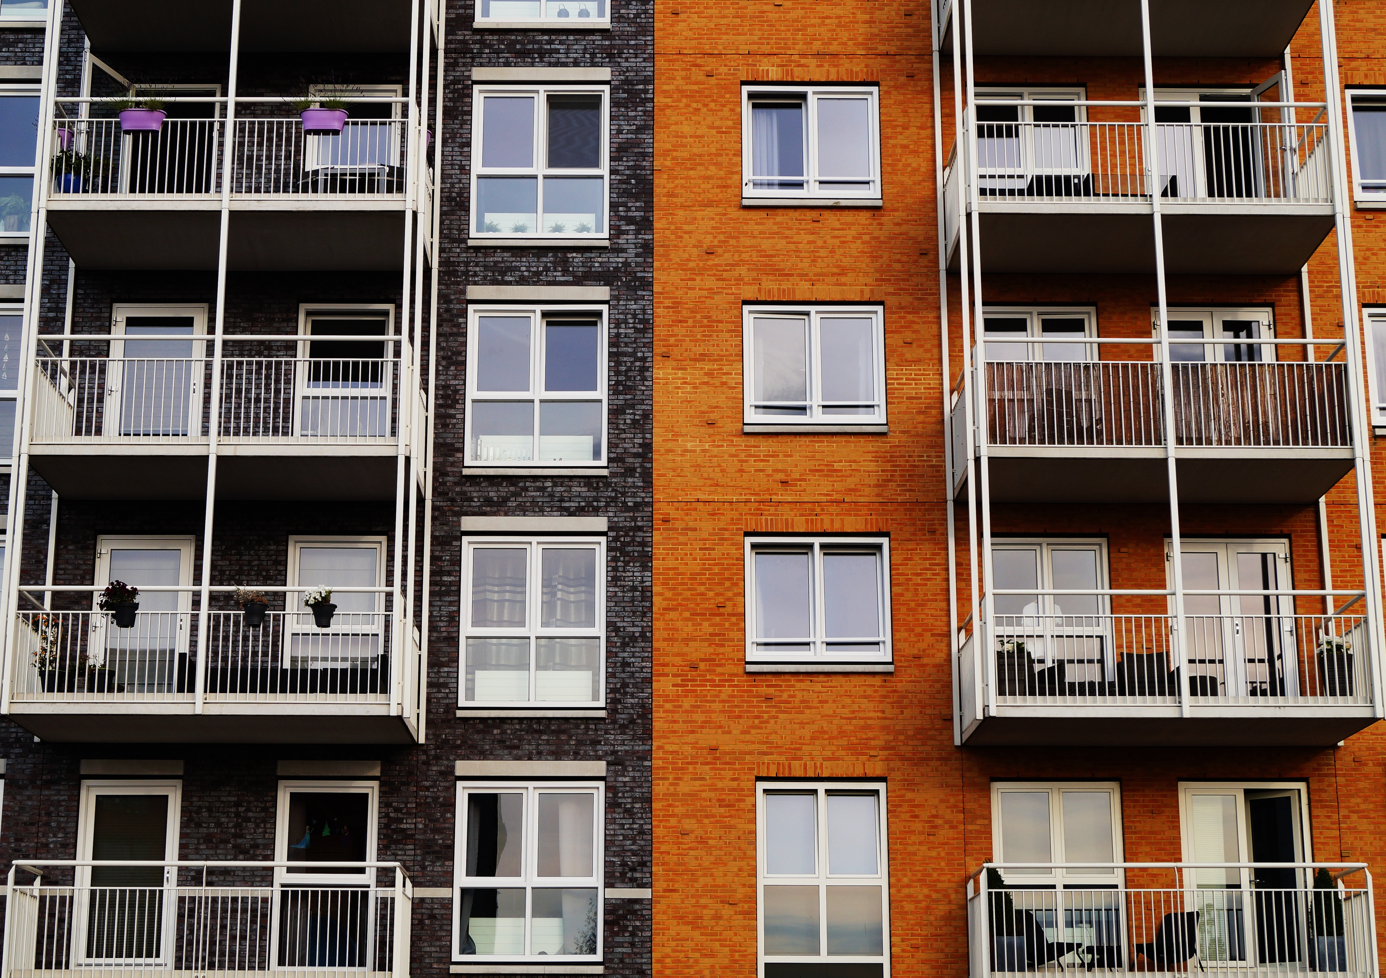 L’audit énergétique règlementaire pour les logements classés F et G proposés à la vente entrera en vigueur le 1er avril 2023